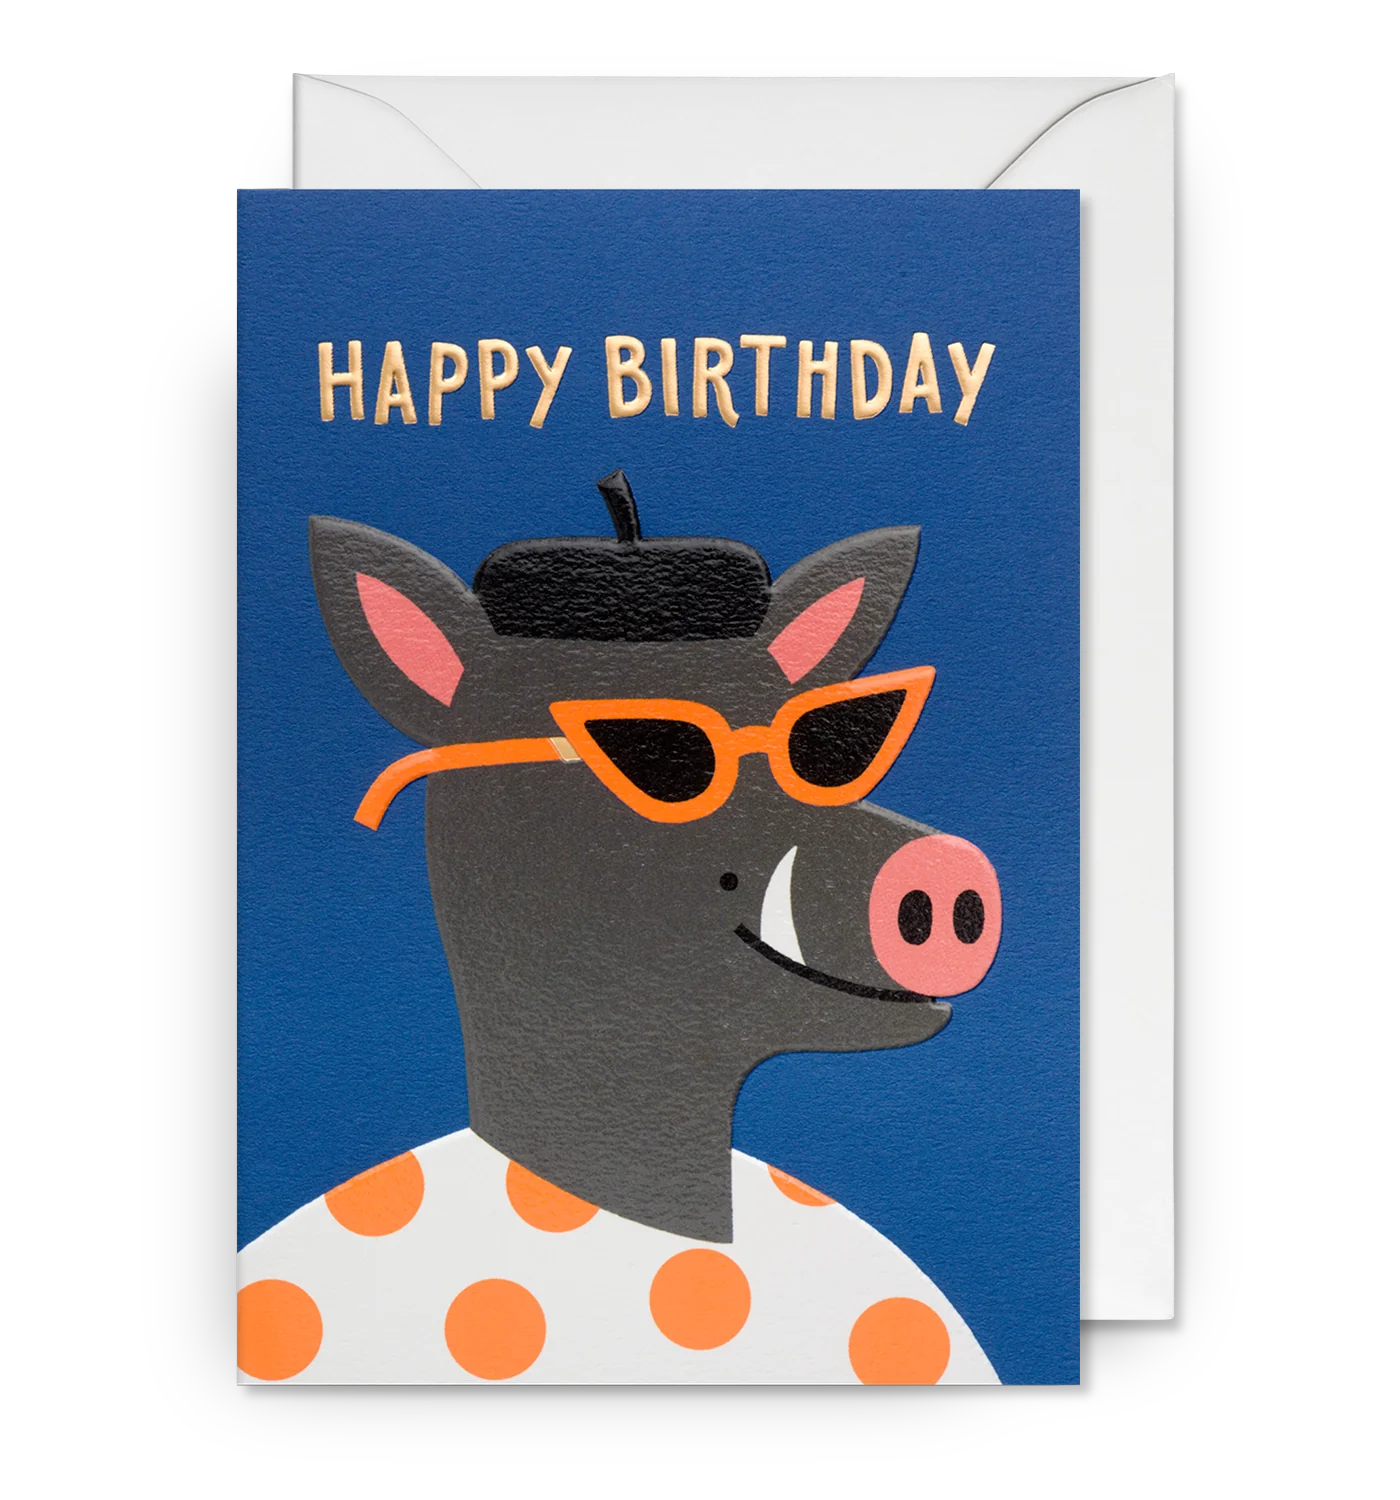 Happy Birthday Cool Hog Birthday Card by Ilse Weisfelt